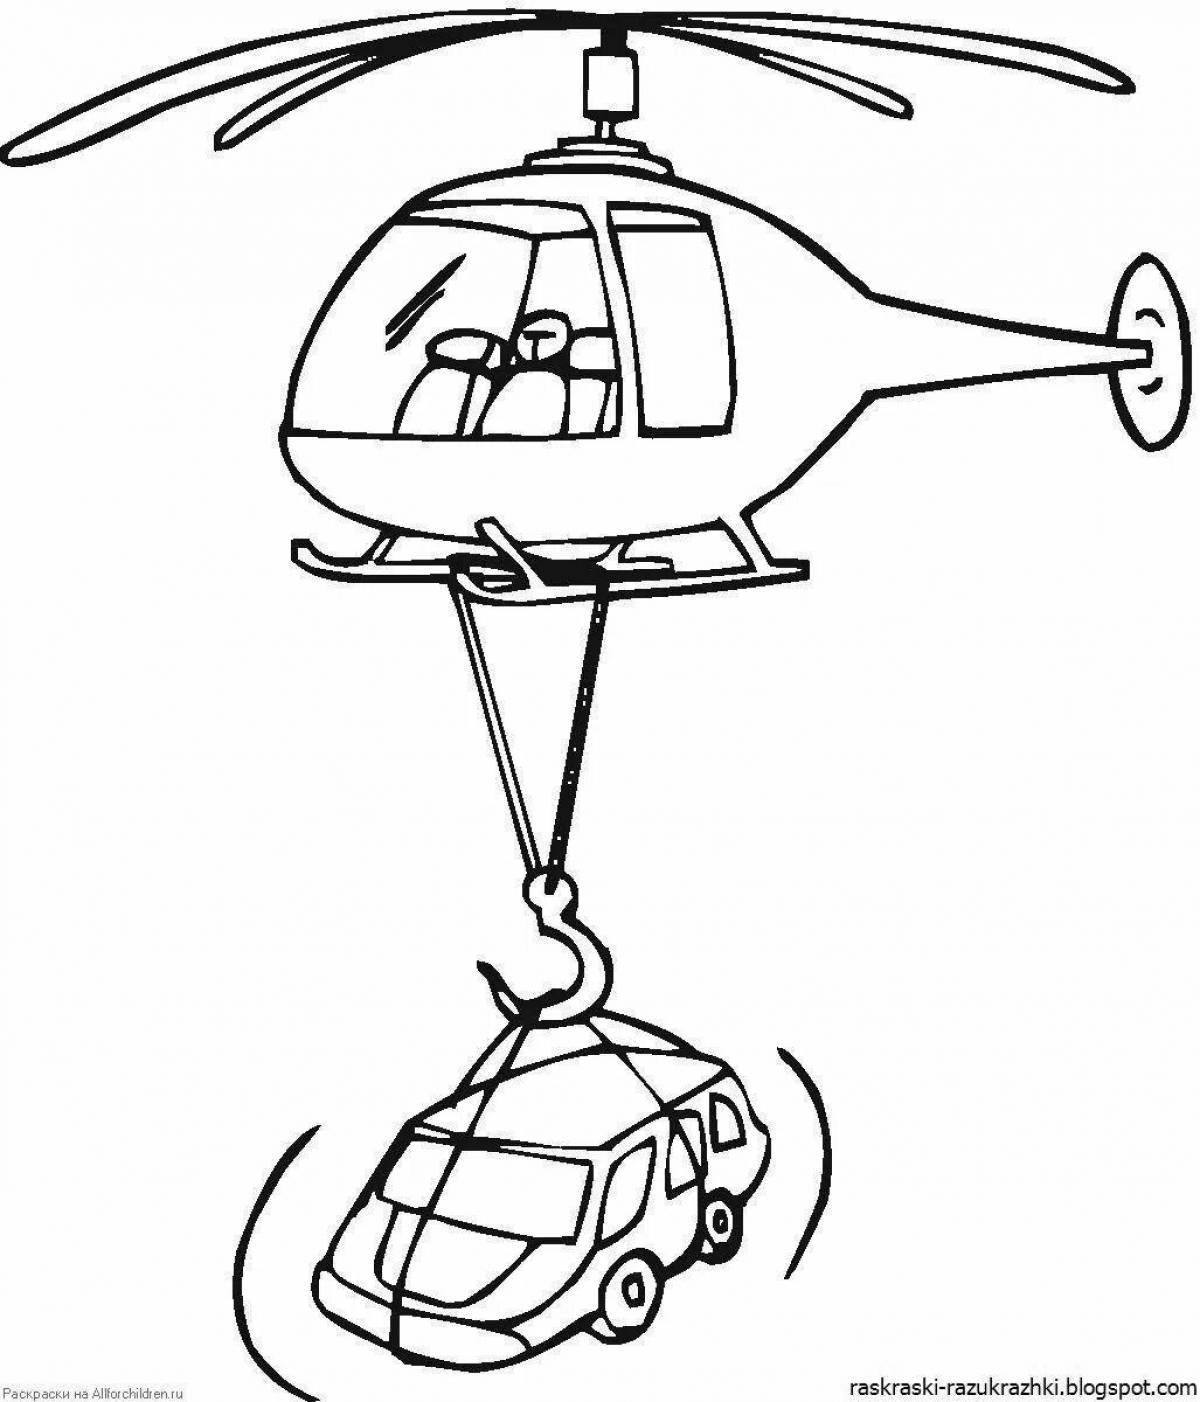 Раскраска очаровательный вертолет для детей